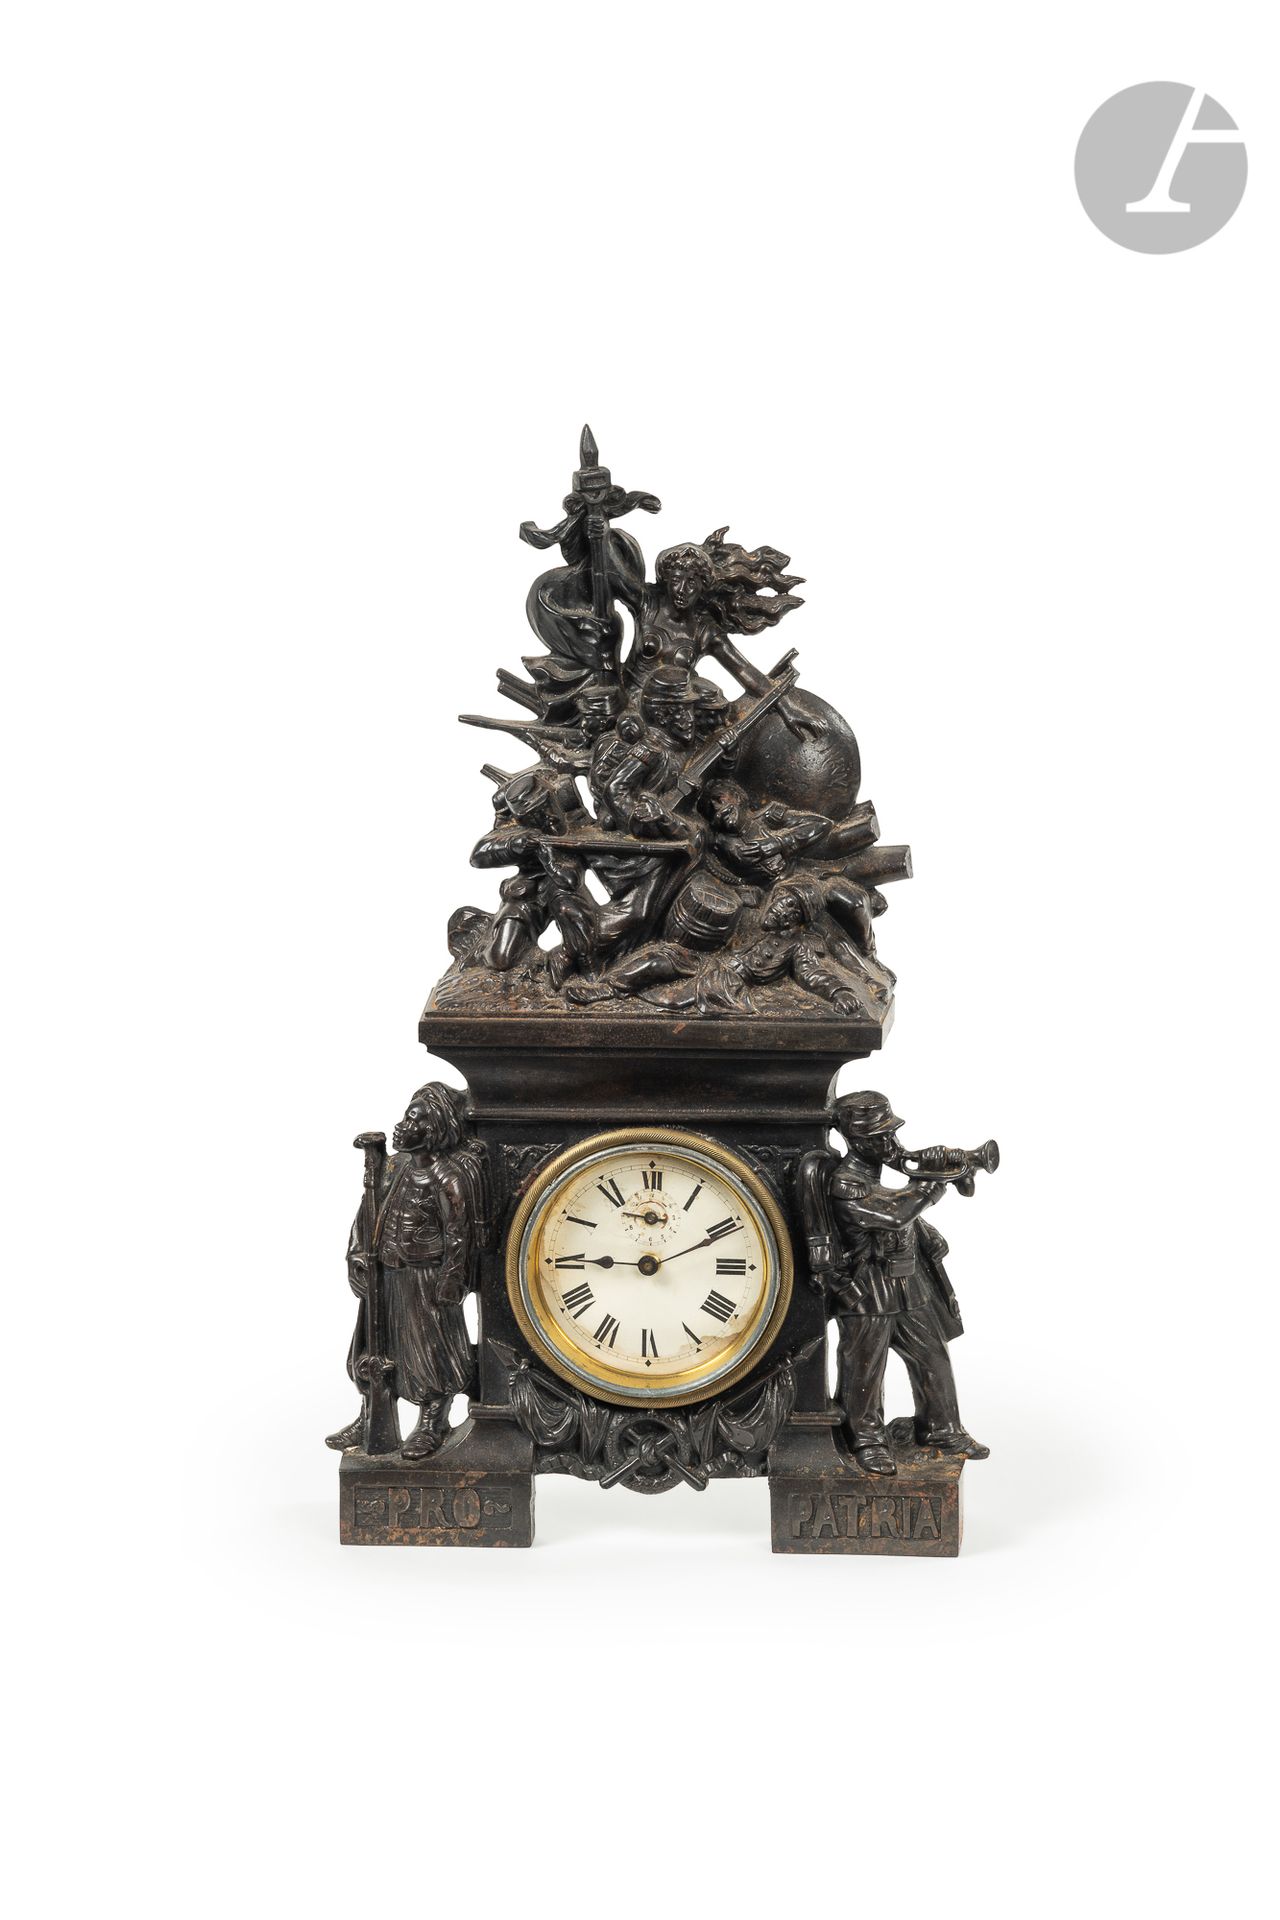 Null "支持爱国者。1870年 "
铸铁钟，带有铜锈，并装饰有一个由步兵保卫的法国的寓言
。
 
基地有步兵和驺吾。珐琅质表盘上有罗马数字。
25 x 7 &hellip;